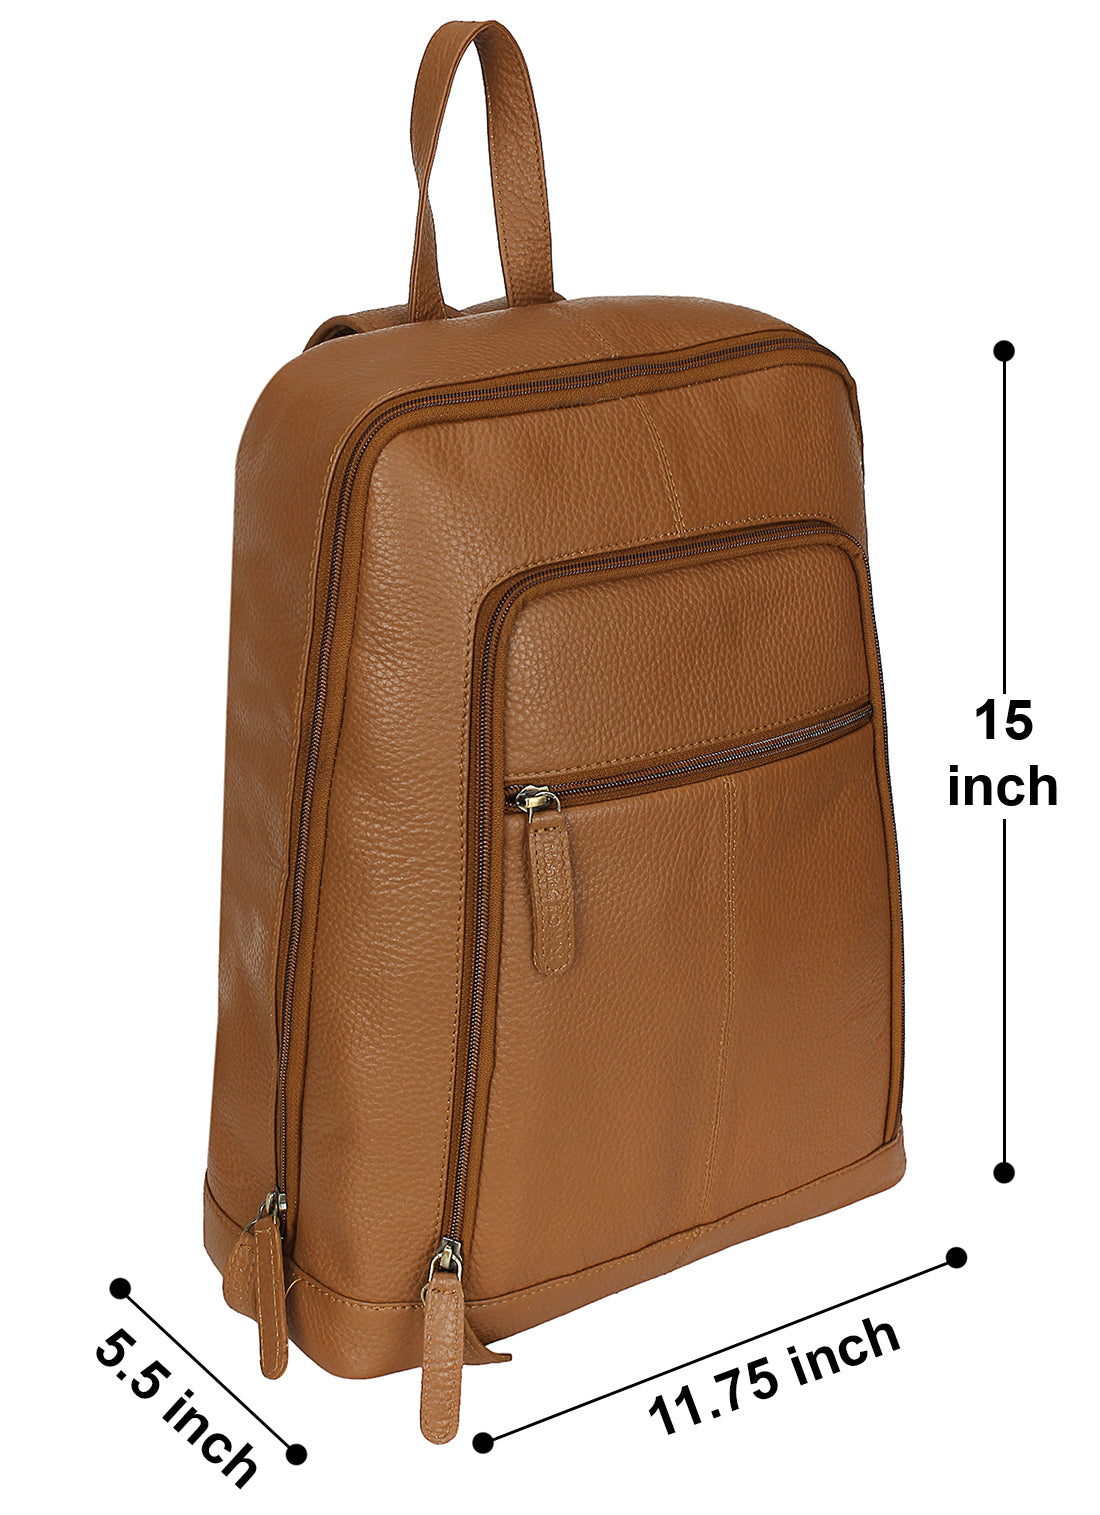 Genuine Leather Backpack Travel Rucksack Shoulder Bag